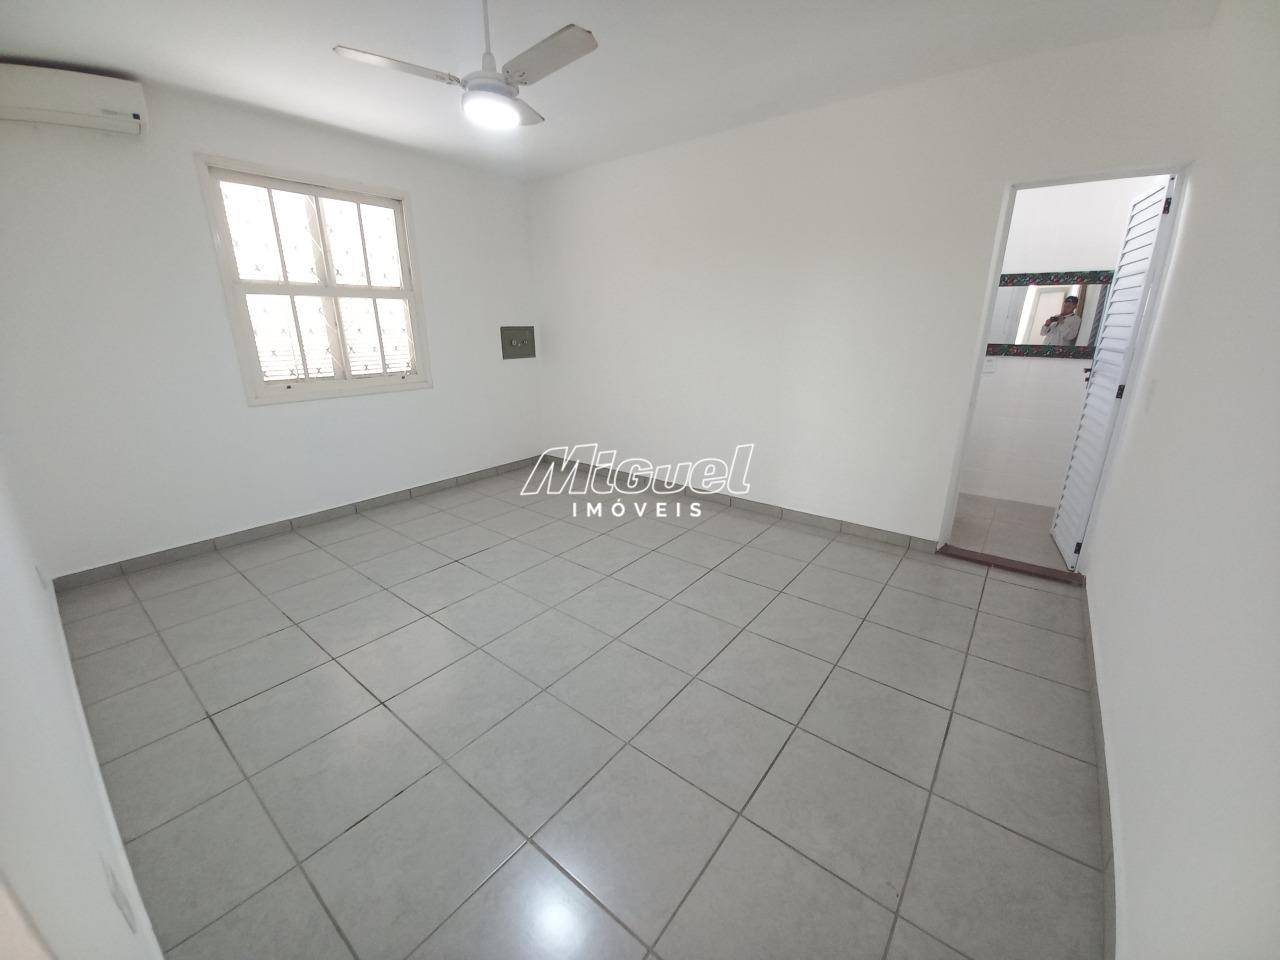 Casa para alugar - Vila Rezende, Piracicaba 155,31m² | 3 quartos, 2 vagas